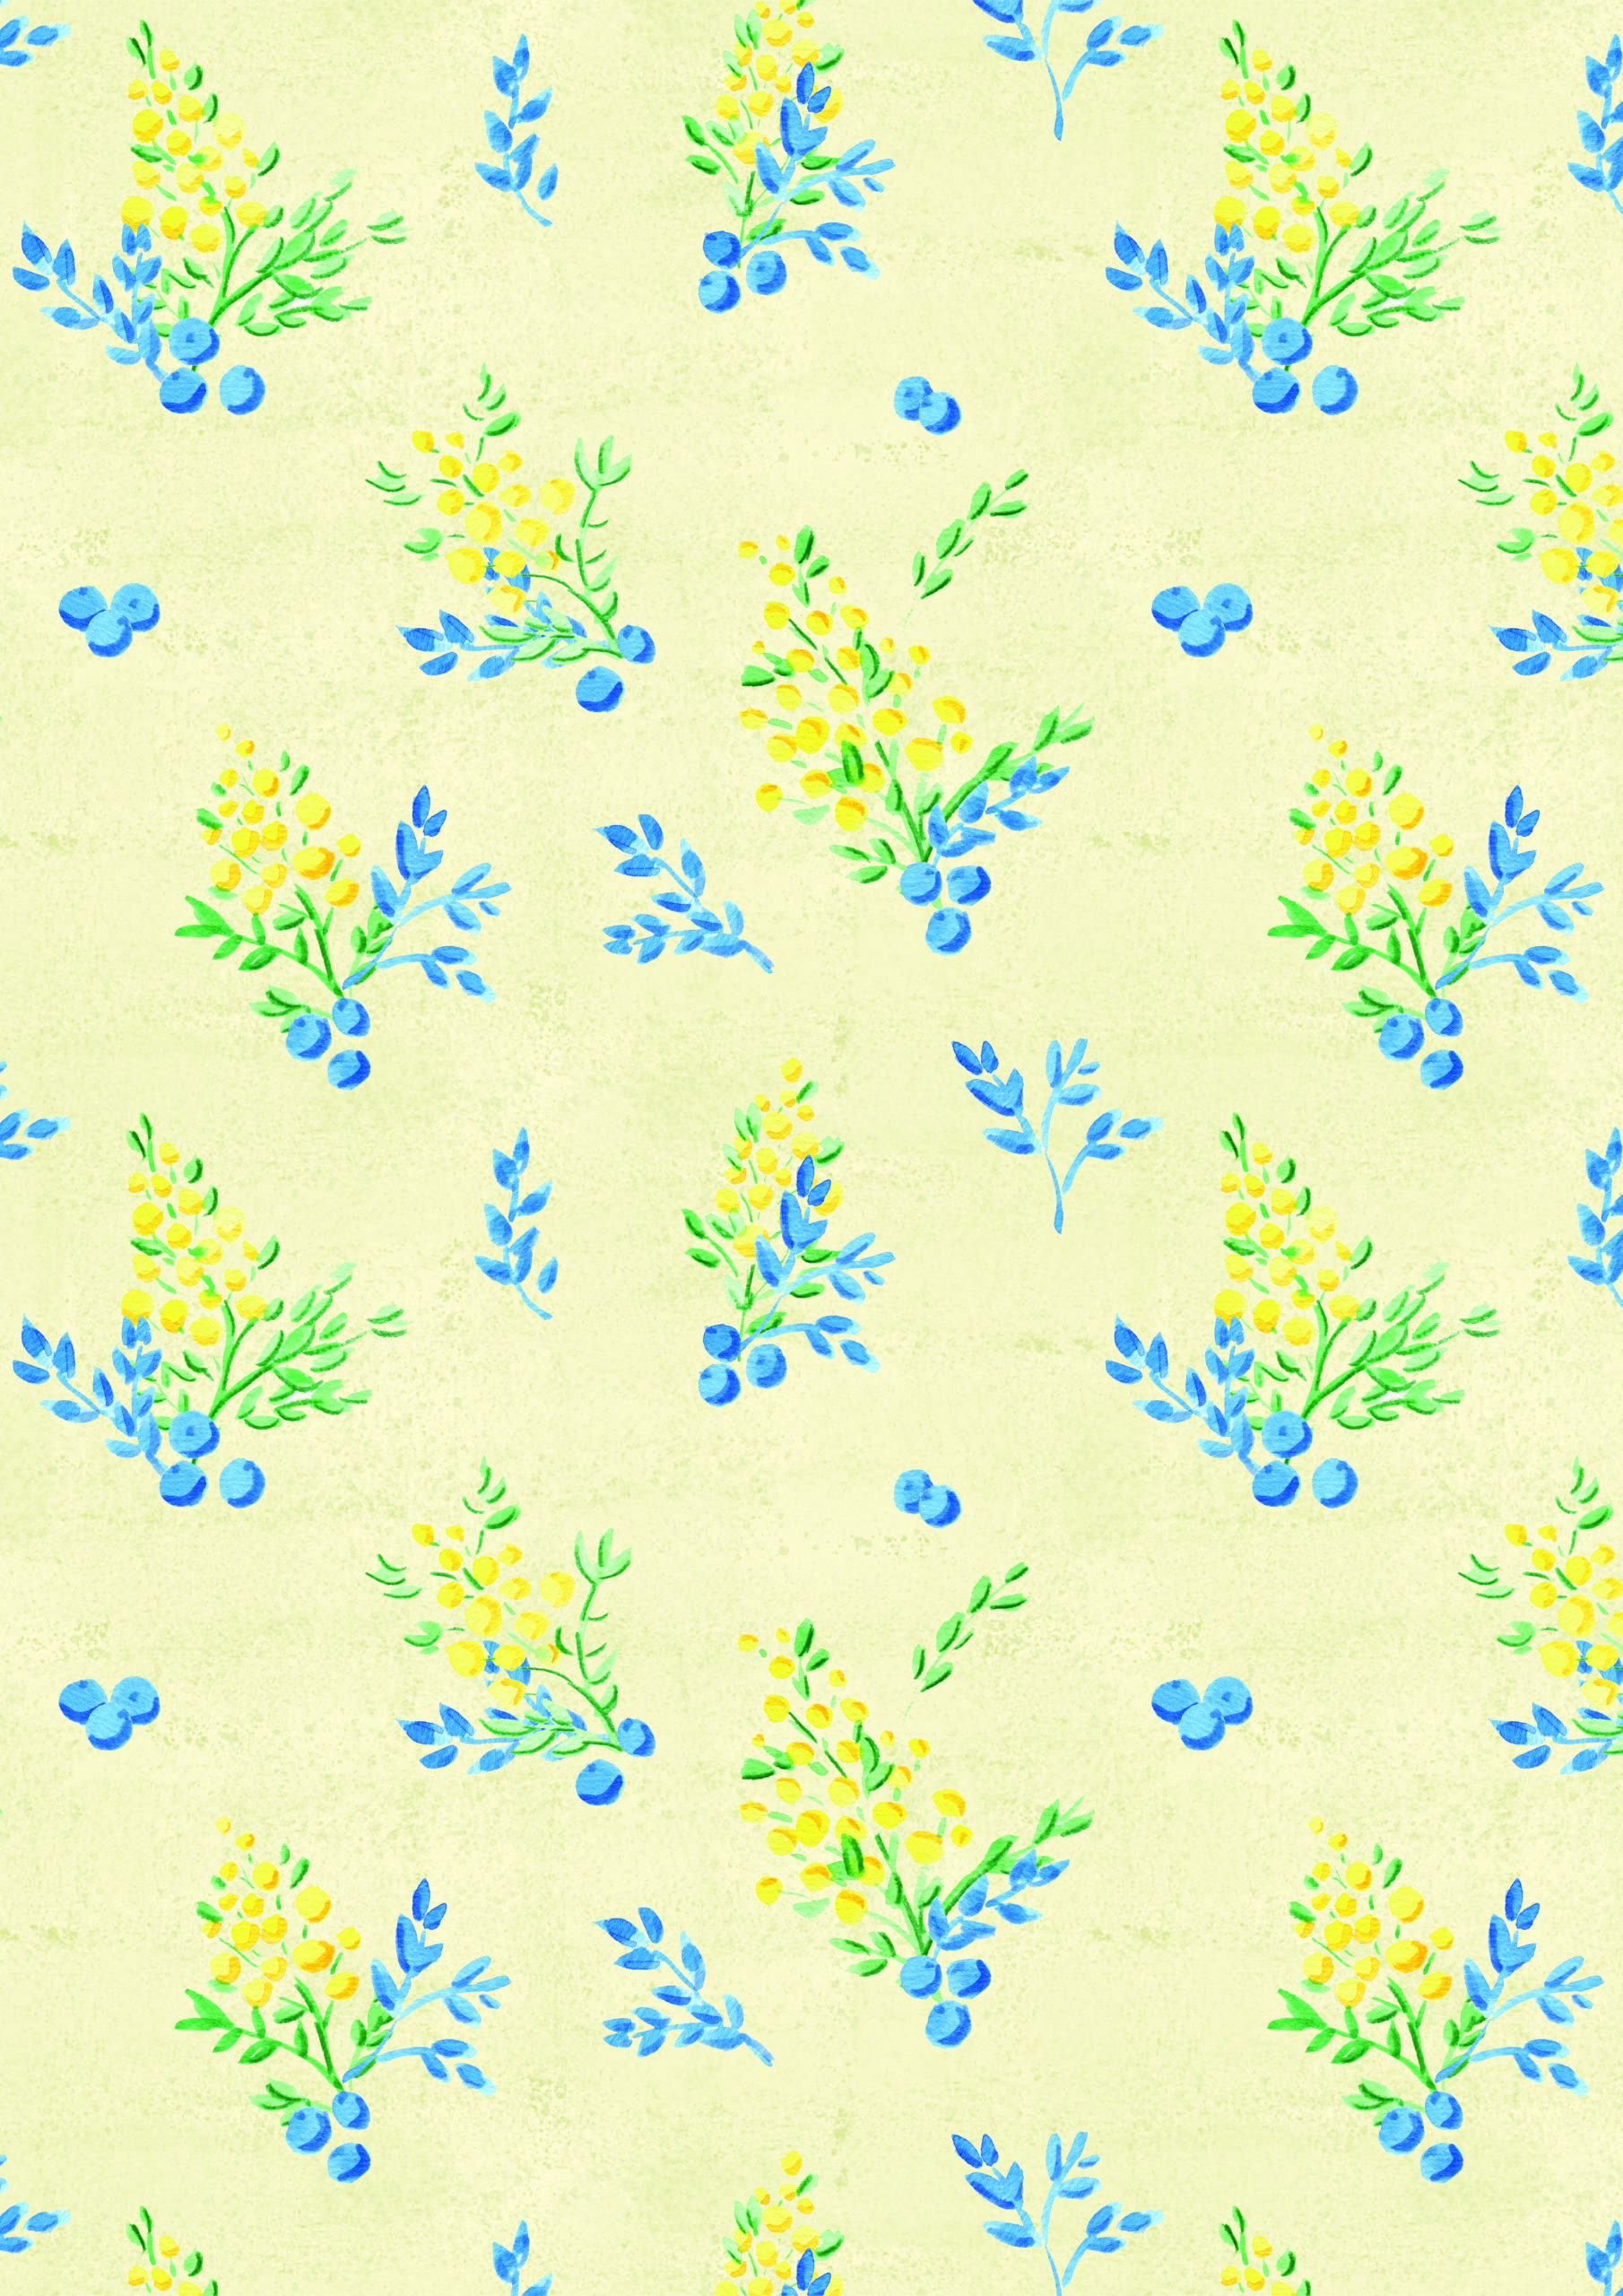 floral pattern design